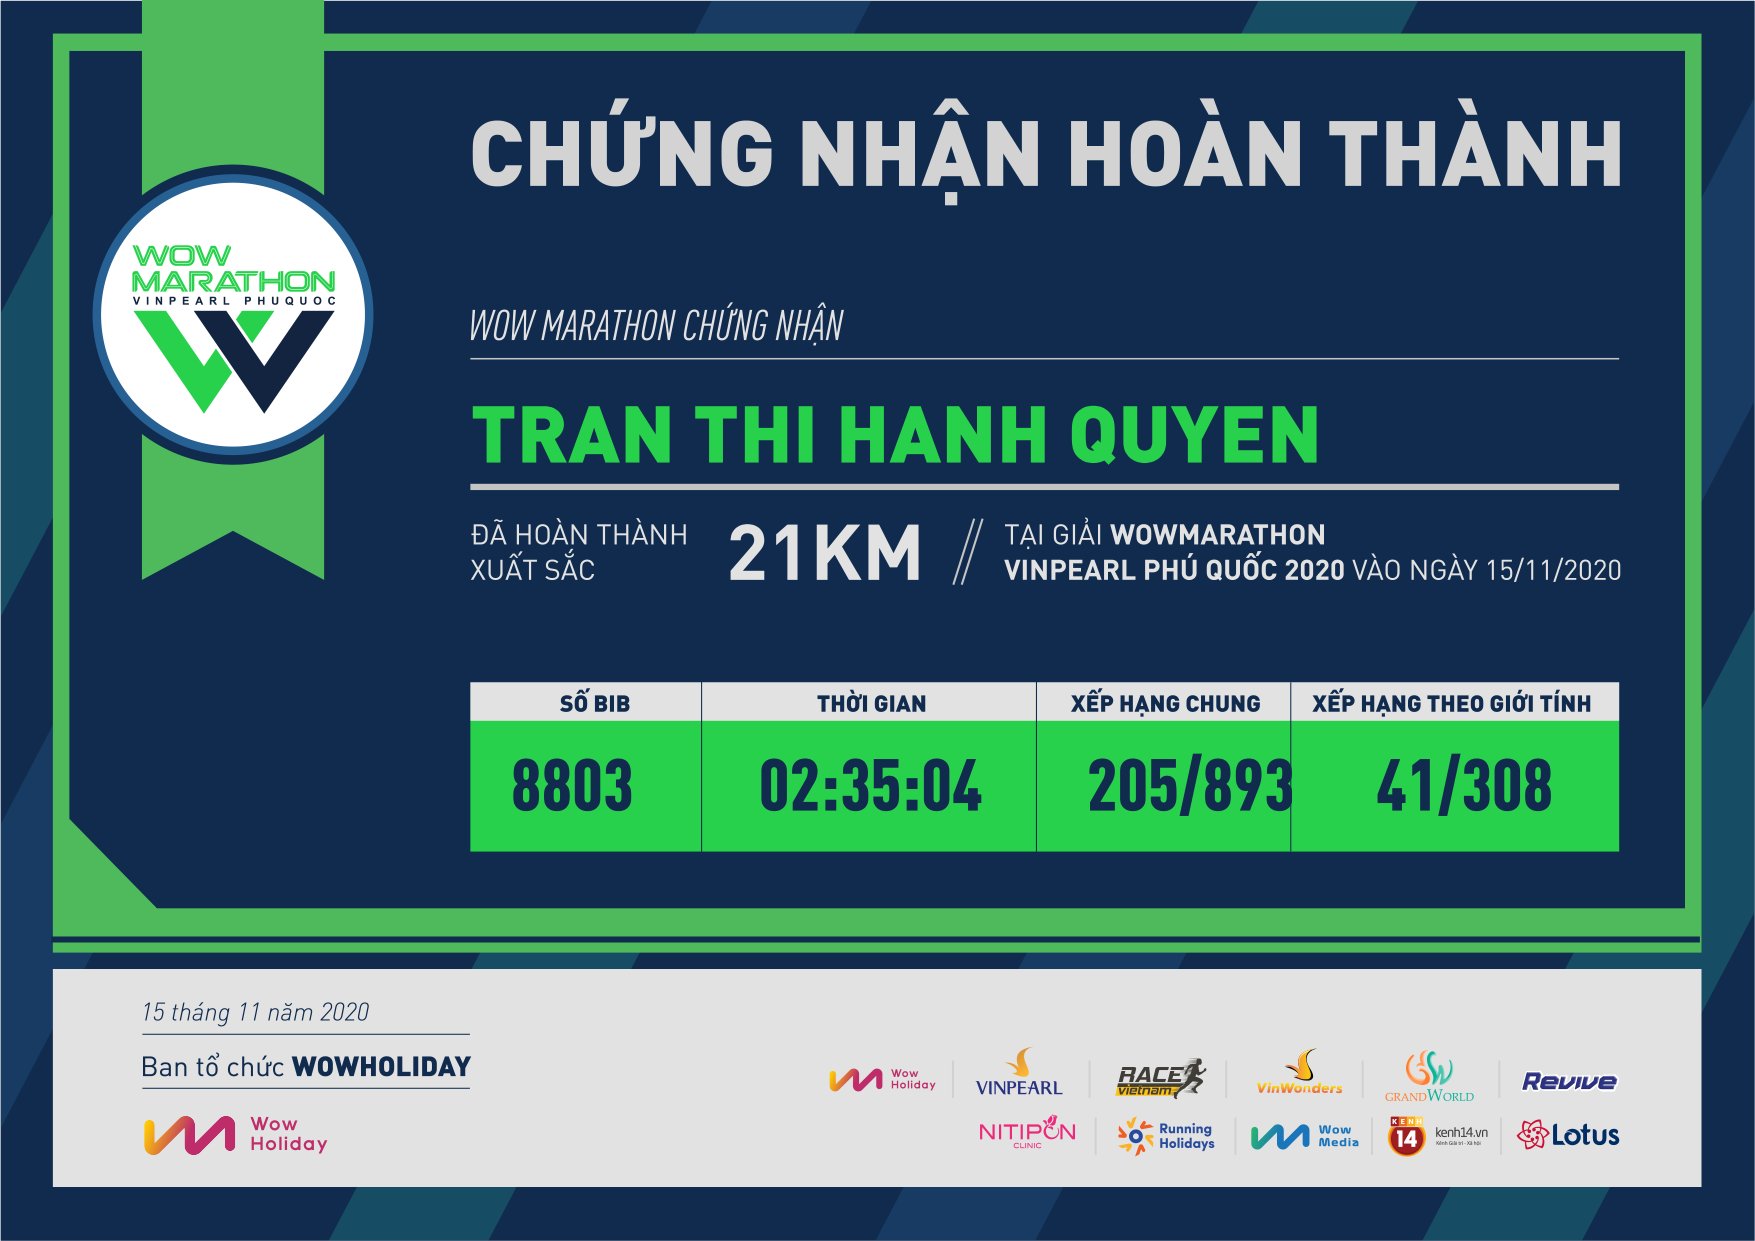 8803 - Tran Thi Hanh Quyen